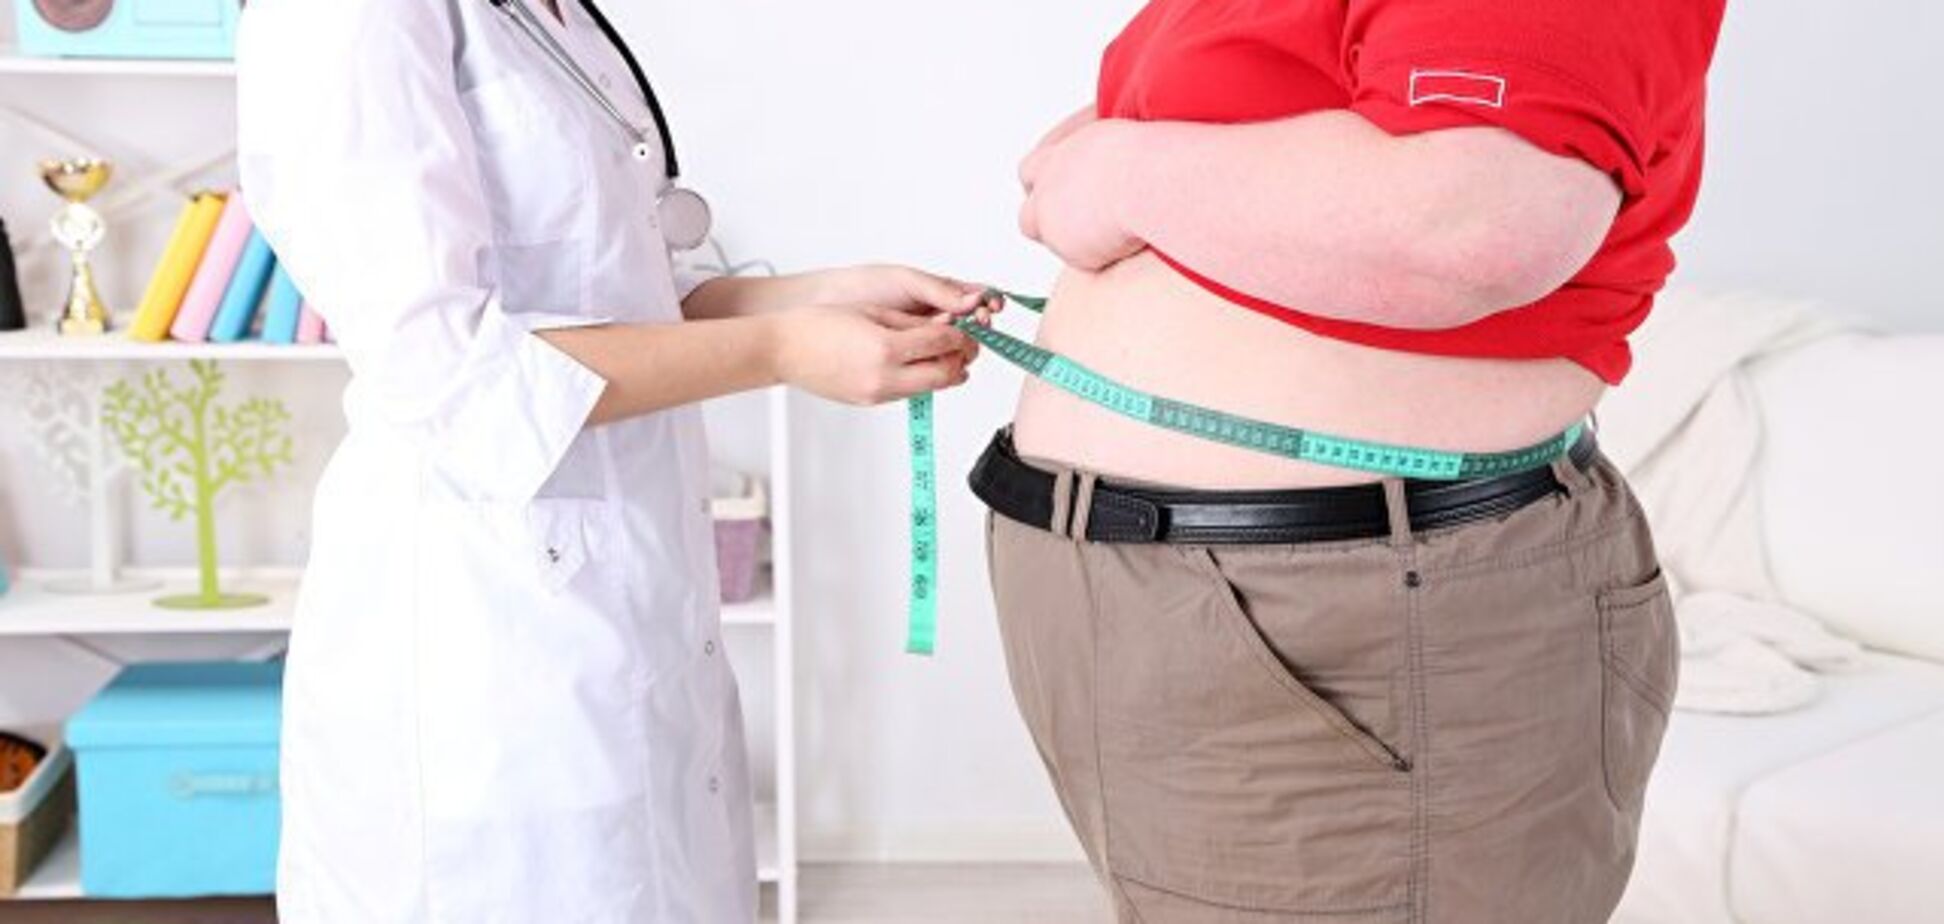 Укорачивает жизнь: медики назвали новую опасность от проблем с весом 